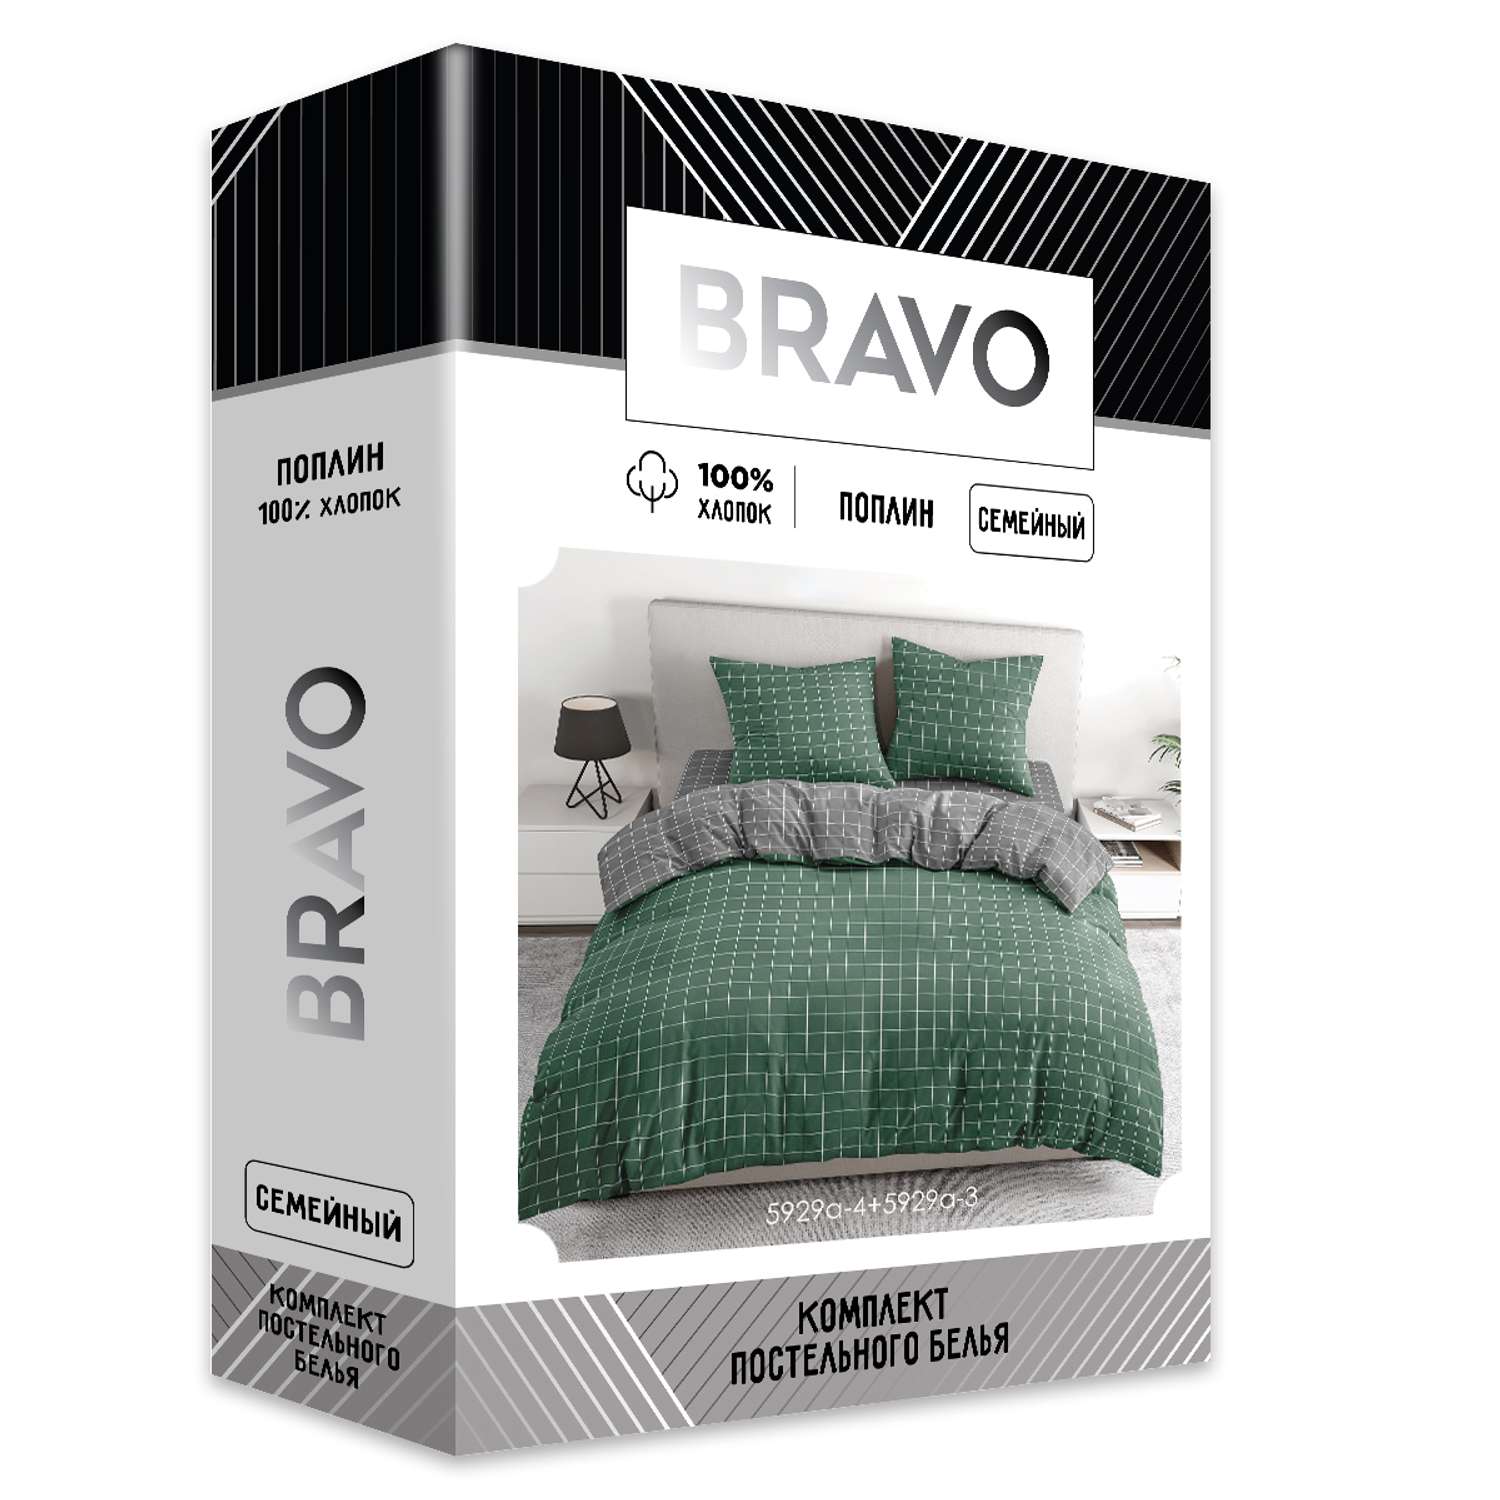 Комплект постельного белья BRAVO Клетка семейный наволочки 70х70 рис.5929а-4+5929а-3 зеленый - фото 8